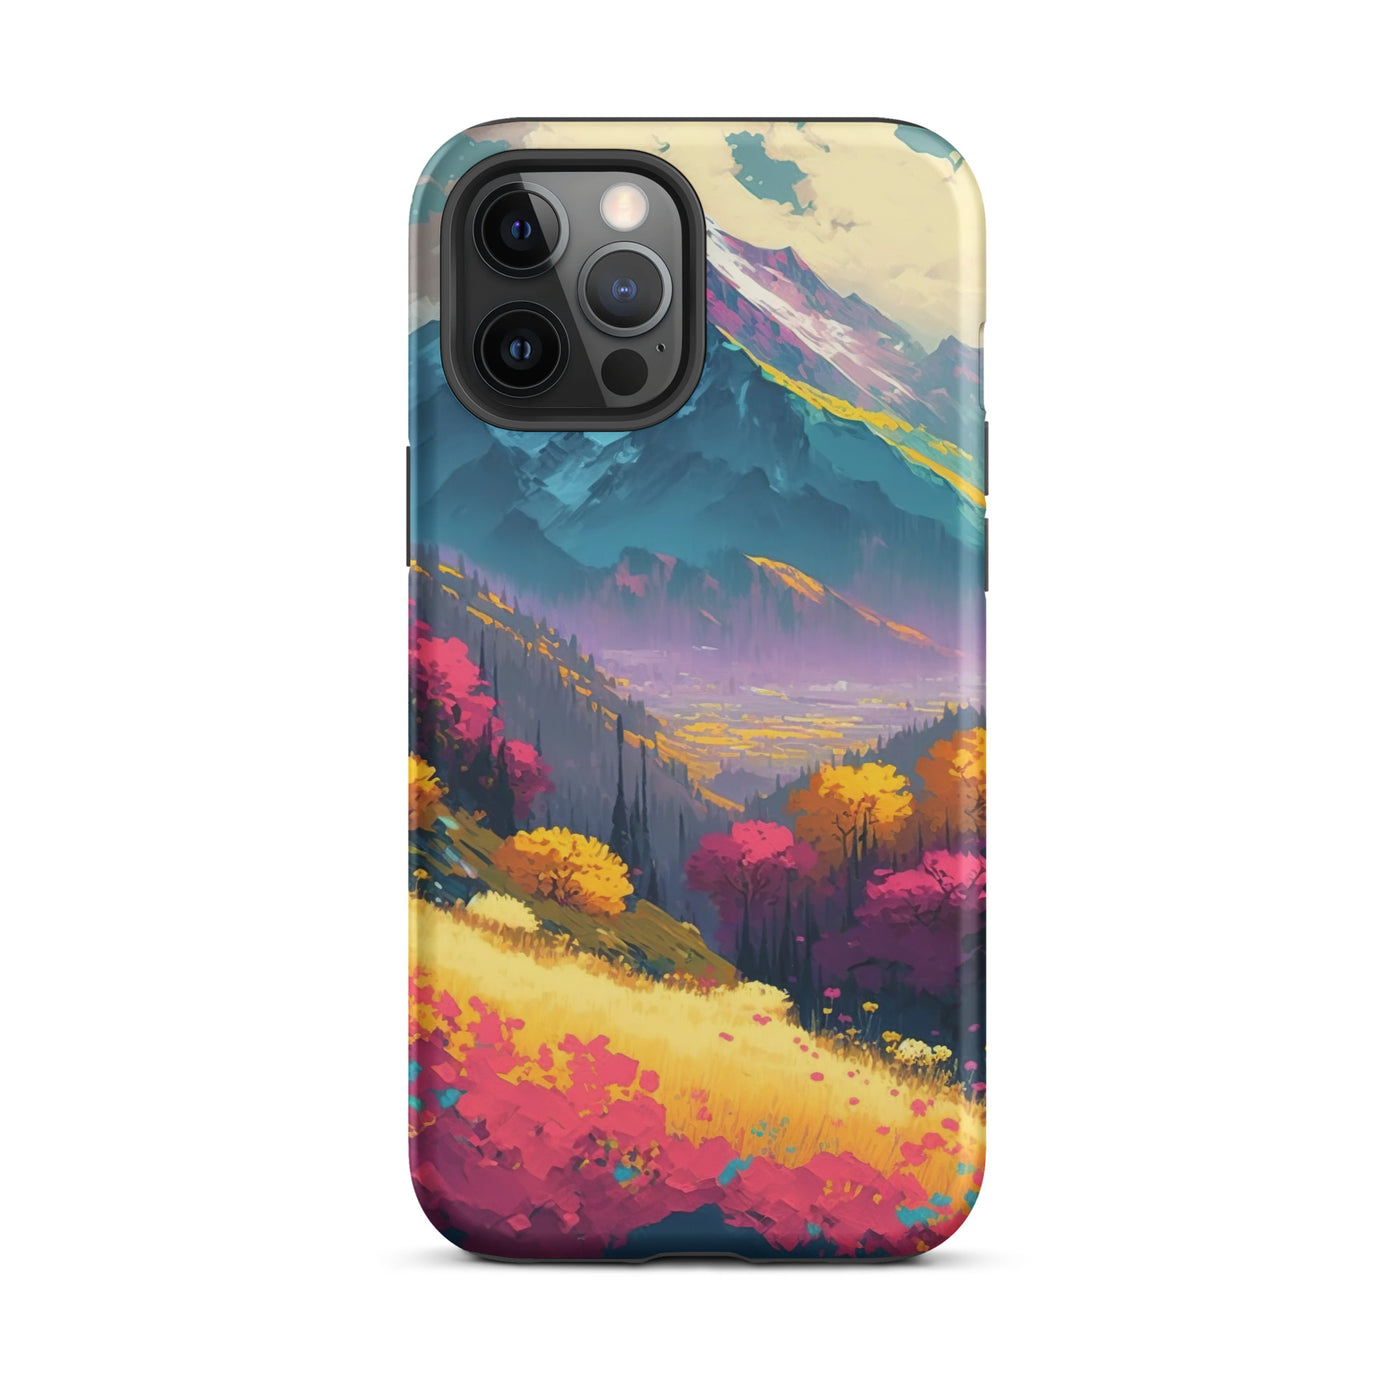 Berge, pinke und gelbe Bäume, sowie Blumen - Farbige Malerei - iPhone Schutzhülle (robust) berge xxx iPhone 12 Pro Max